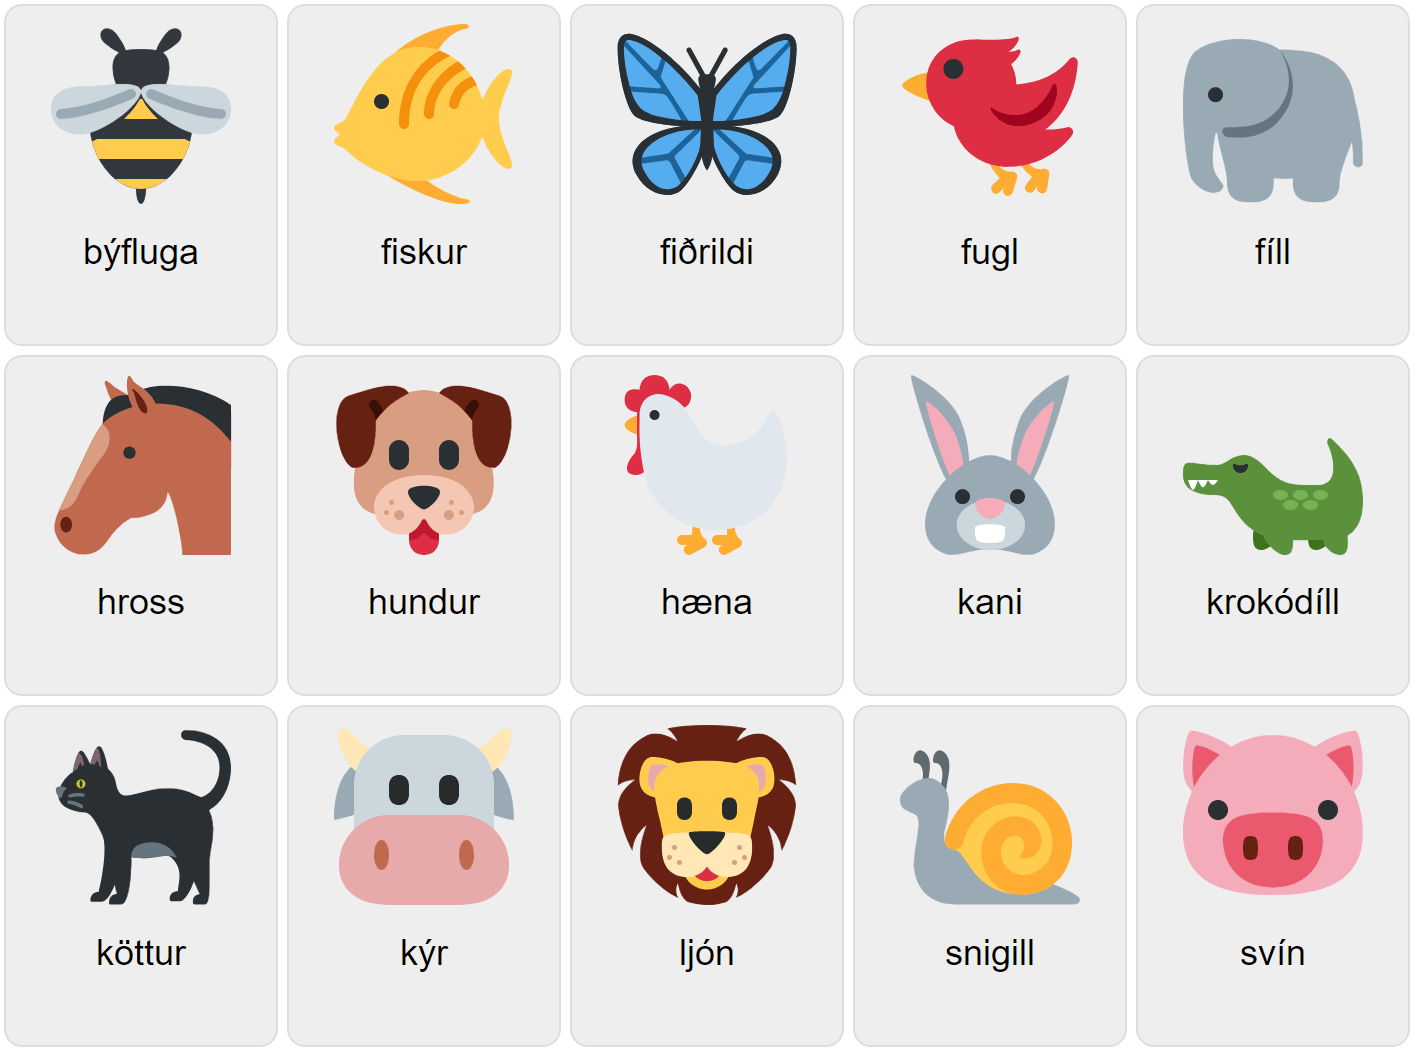 Animales en islandés